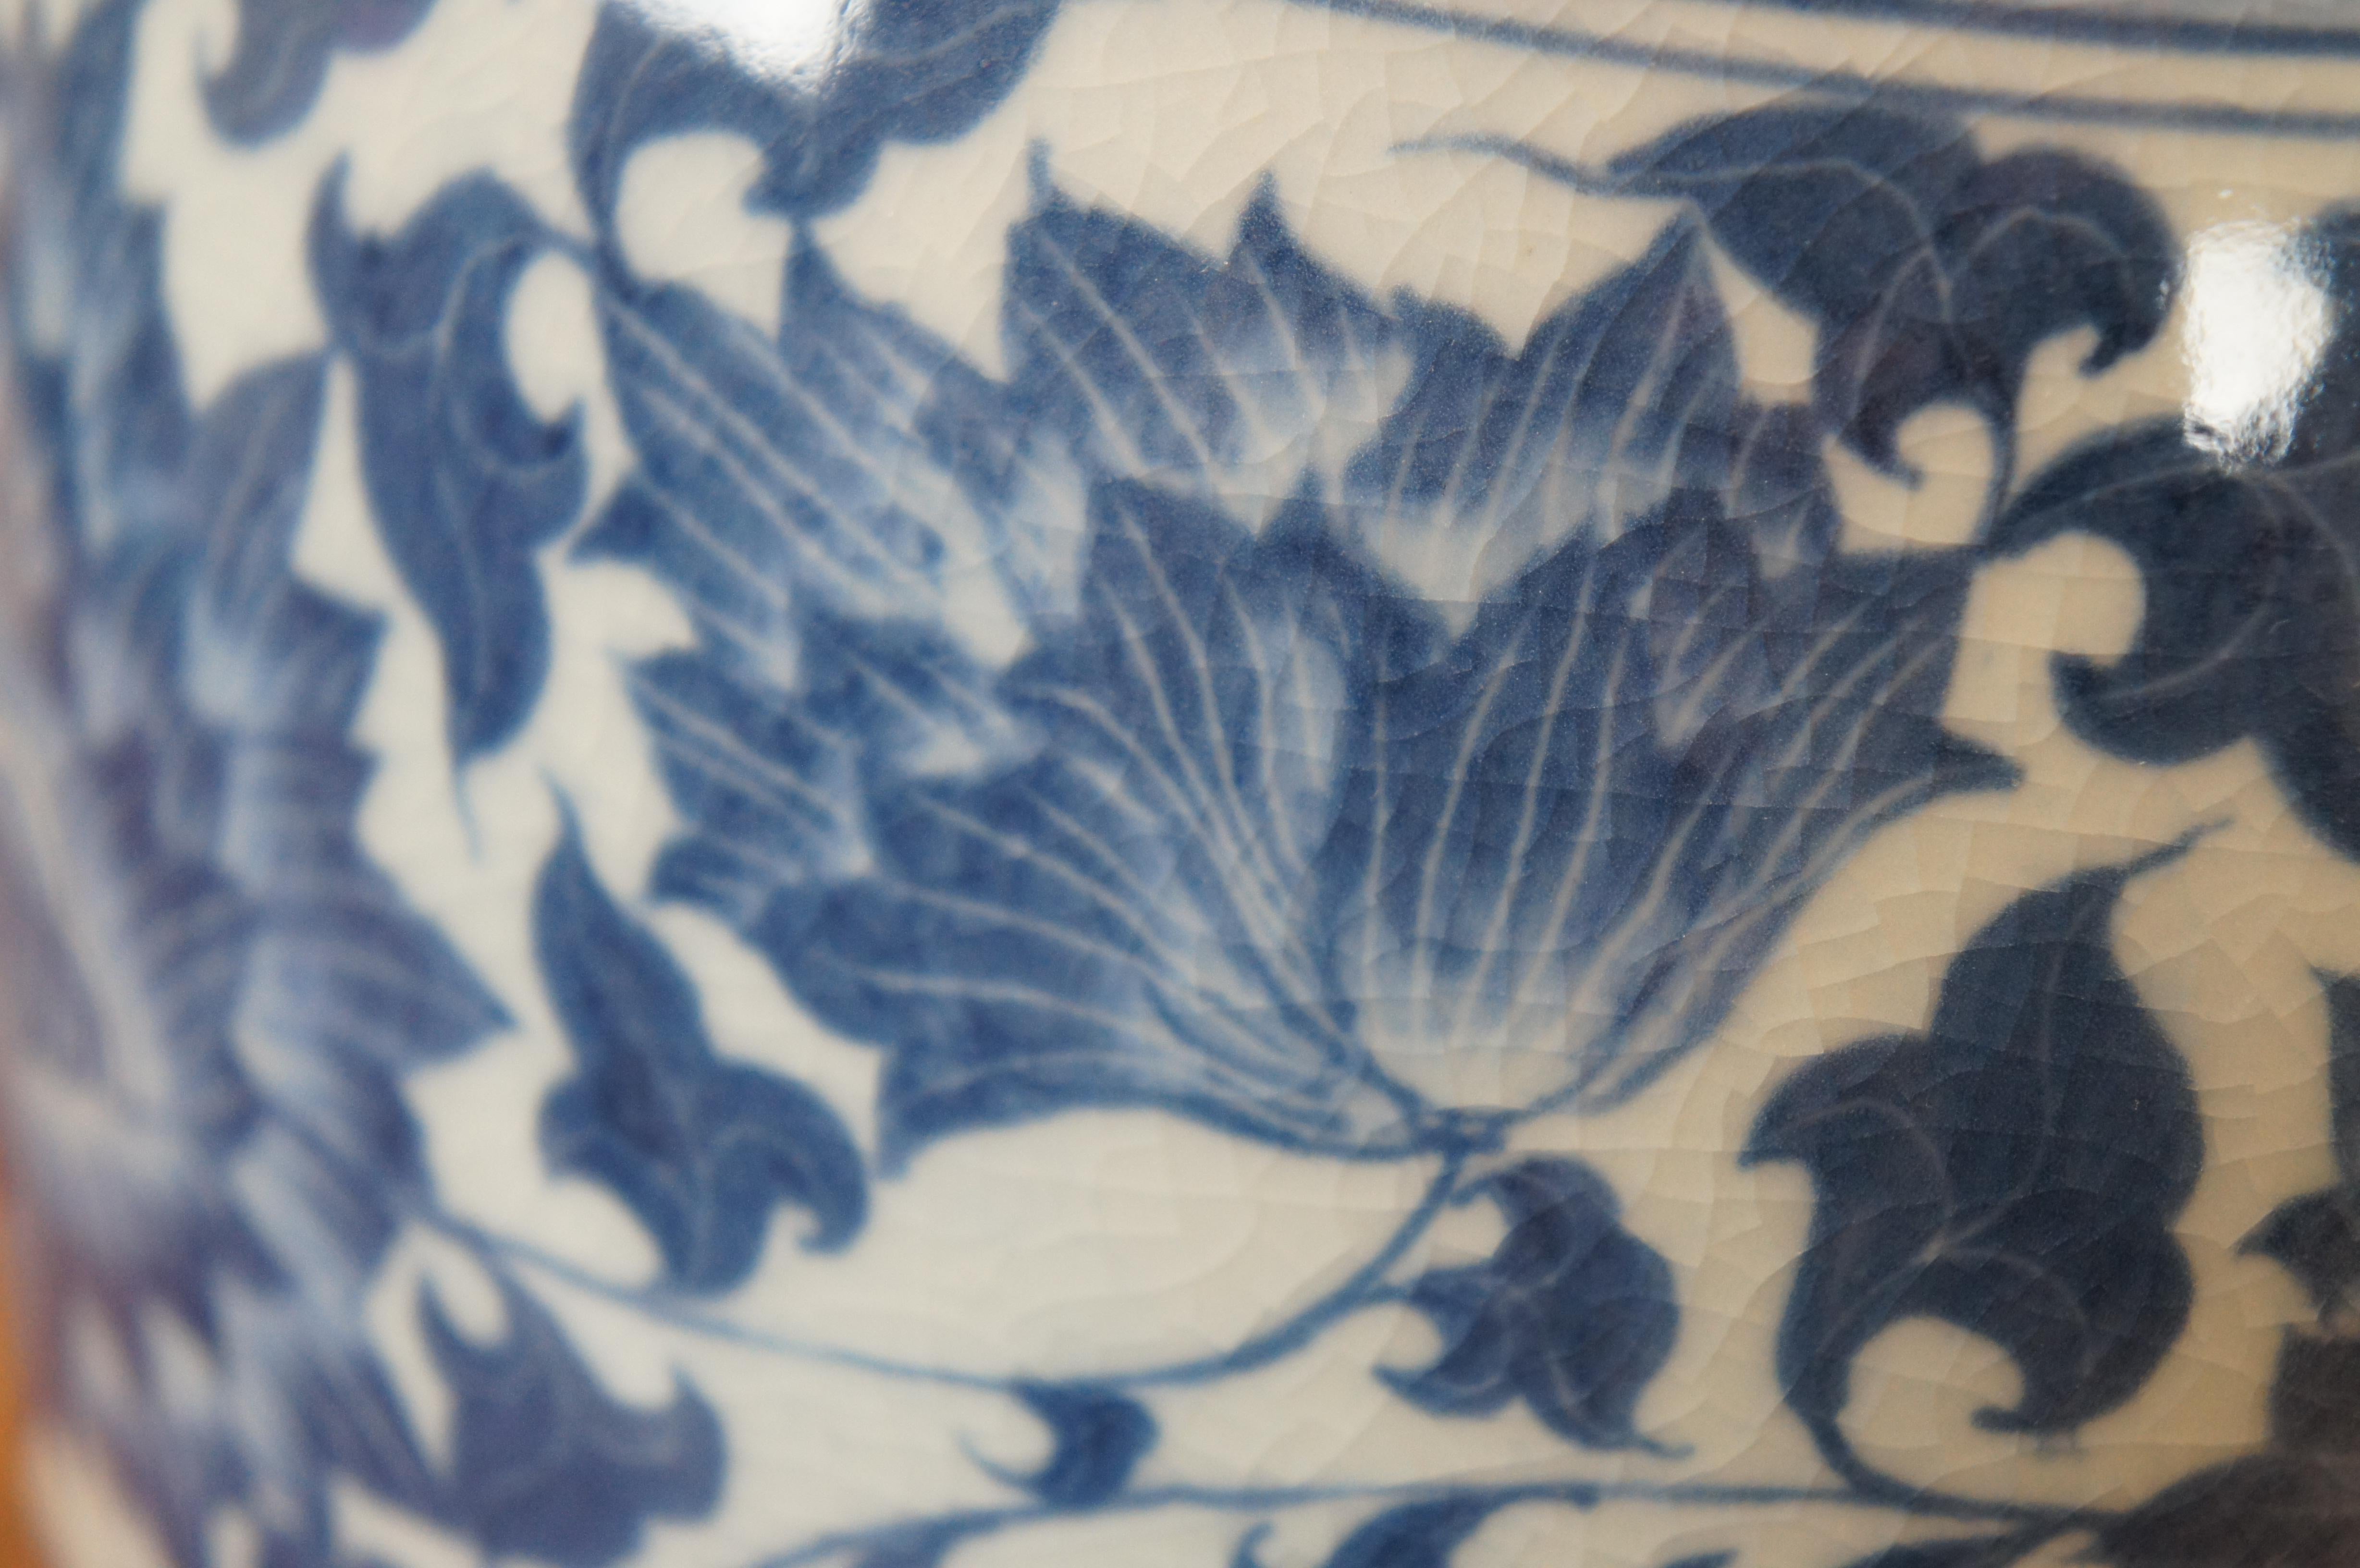 Maitland Smith Blue & White Chinoiserie Porcelain Mantel Vase Flower Urn 15